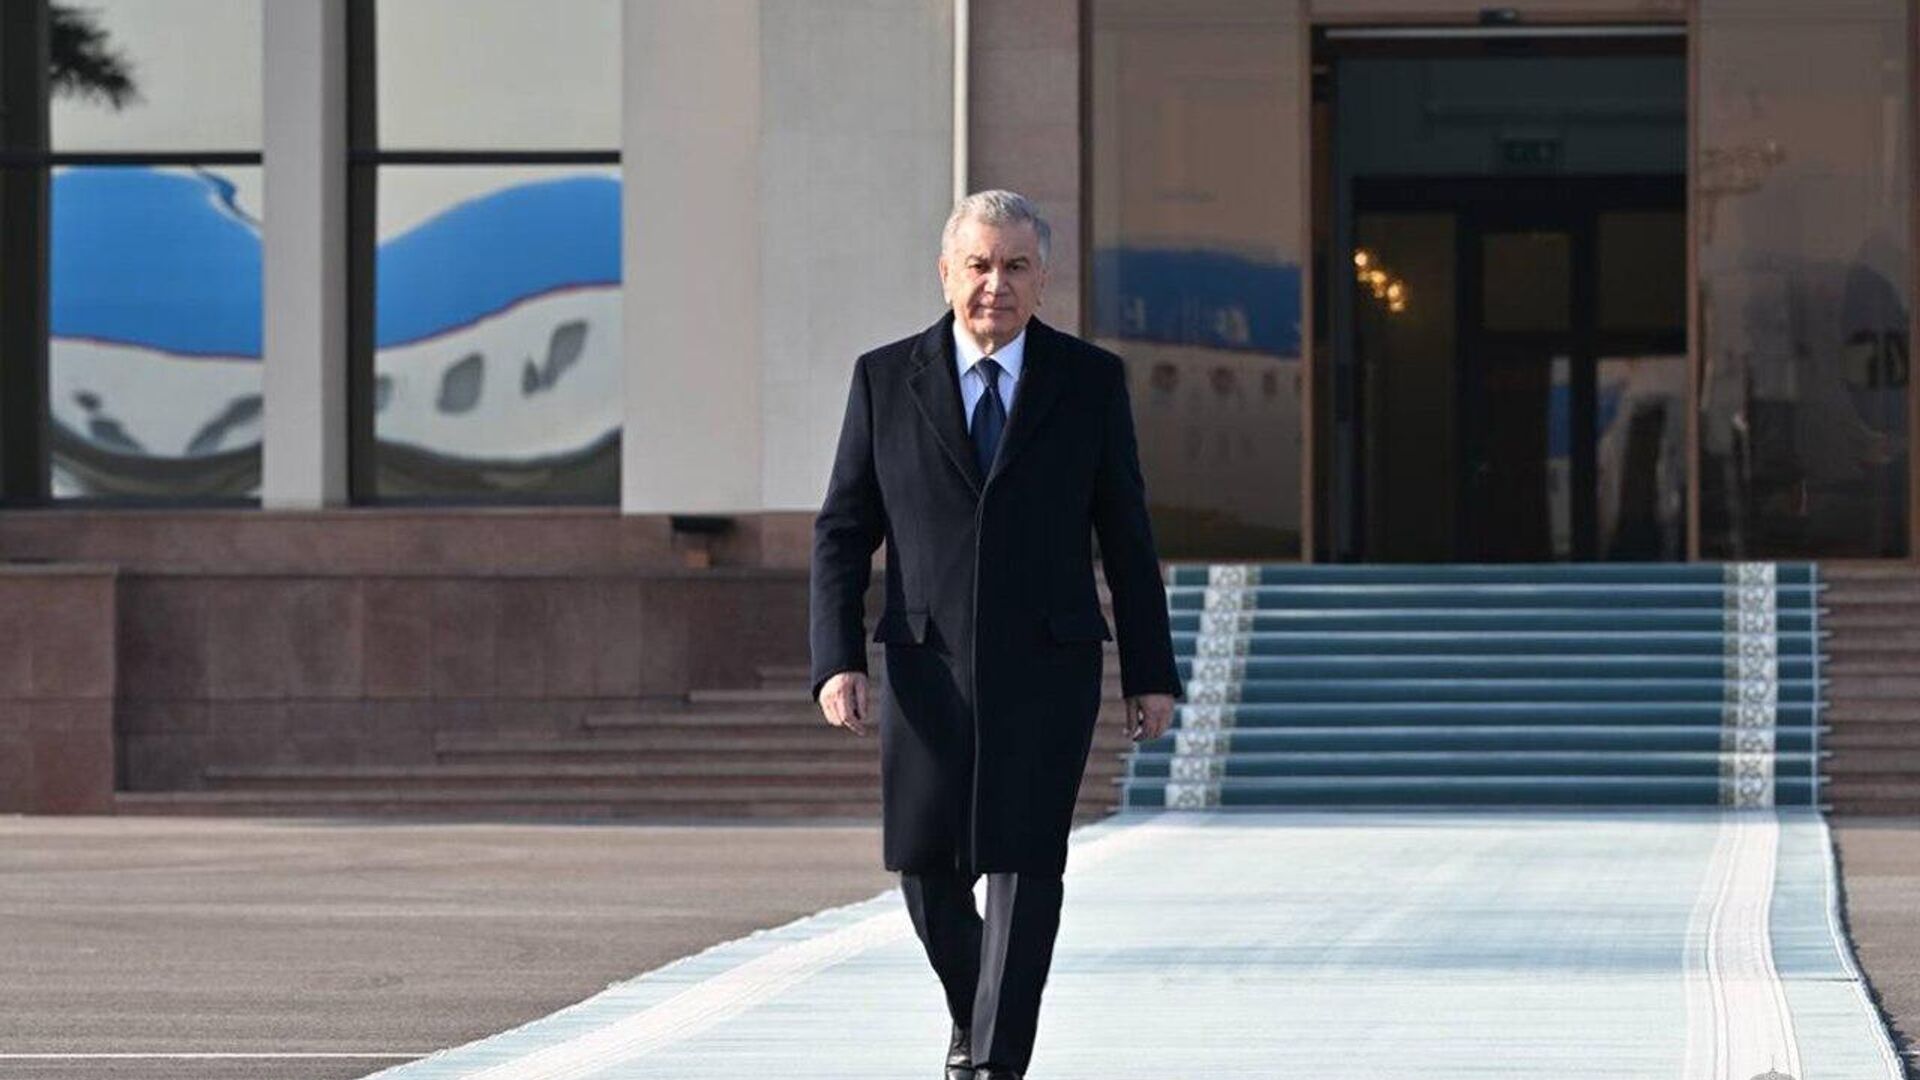 Prezident Uzbekistana Shavkat Mirziyoyev otbыl v Kыrgыzstan. - Sputnik Oʻzbekiston, 1920, 01.02.2023